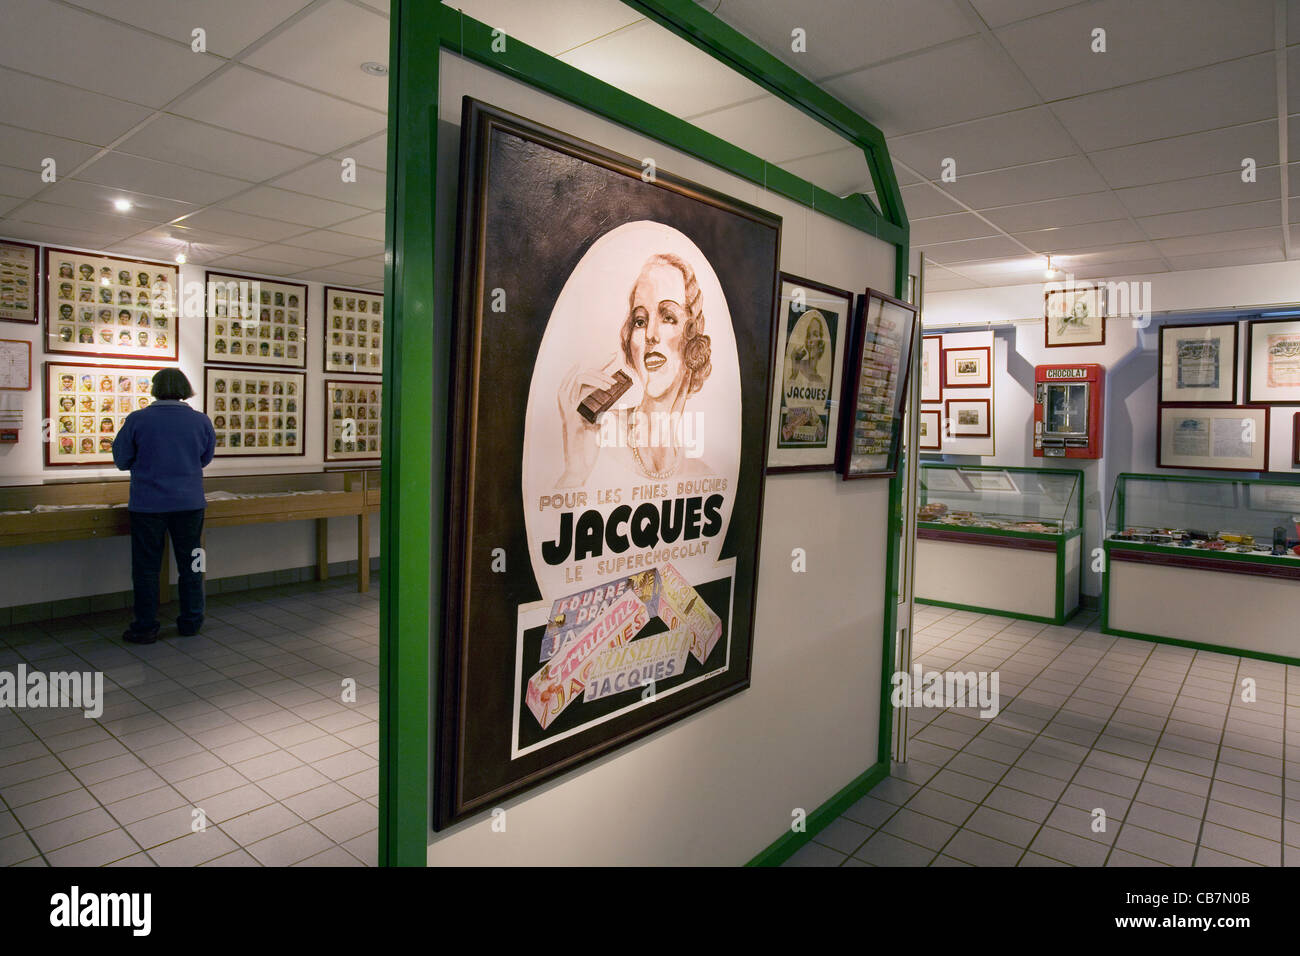 Intérieur de la musée du chocolat Jacques montrant vieilles affiches publicitaires, Eupen, Belgique Banque D'Images